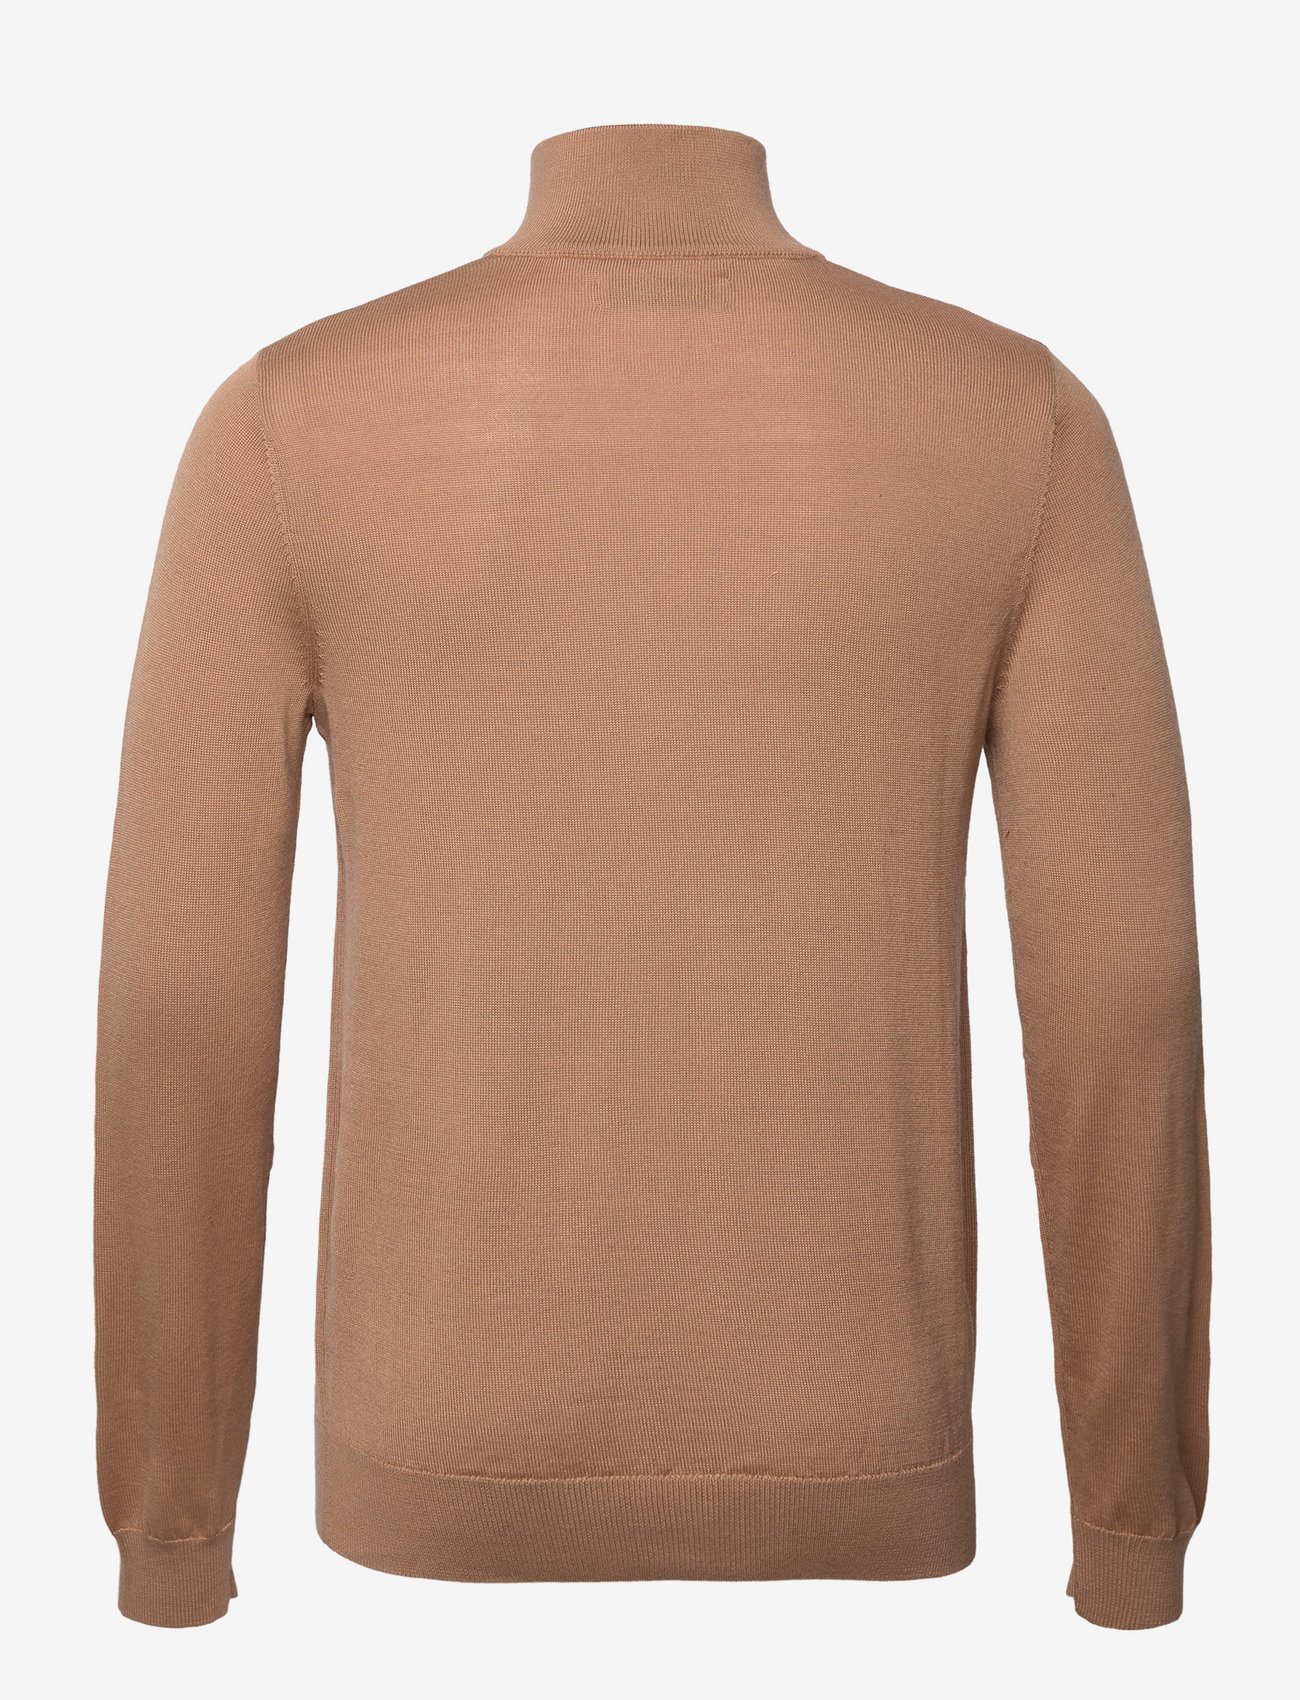 Bertoni - Norh half zip knit - 815 camel - 1